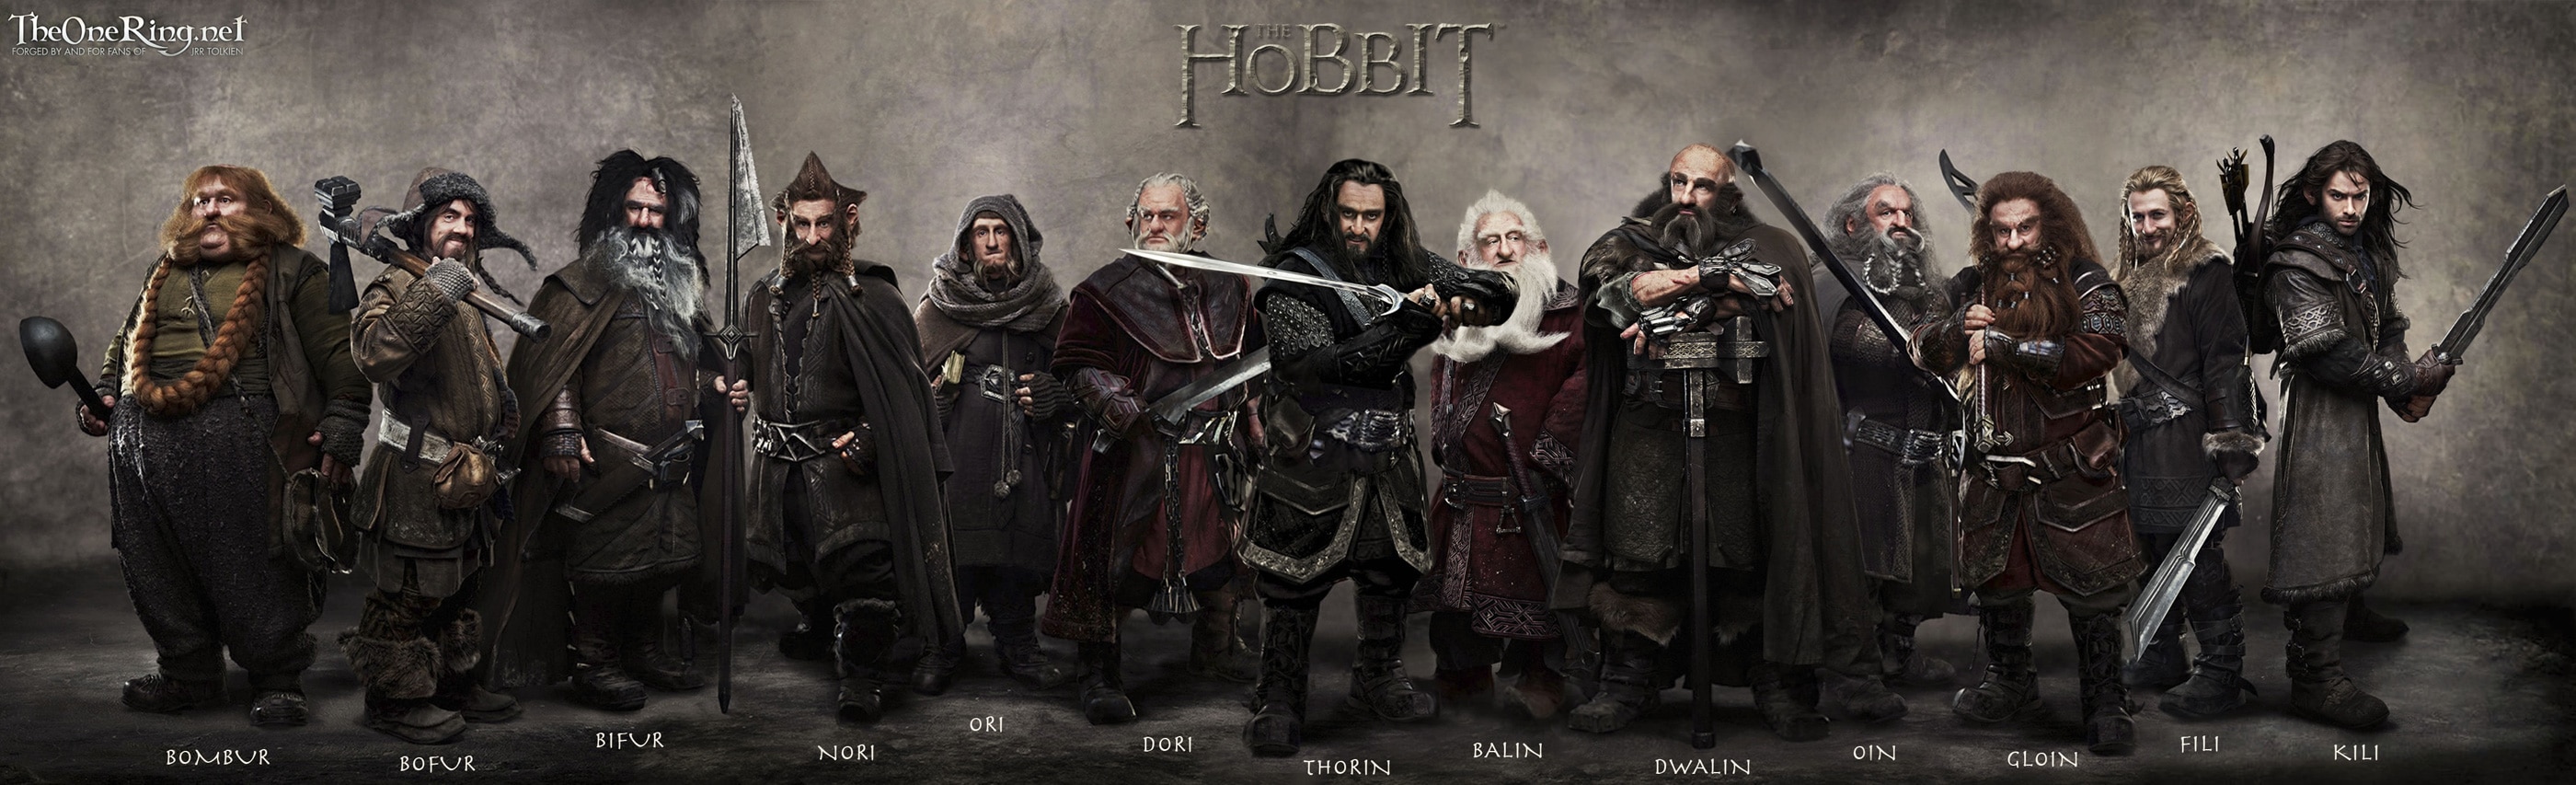 The-Hobbit-Bilbo-Le-Hobbit-1ère-Partie-Banner-01 